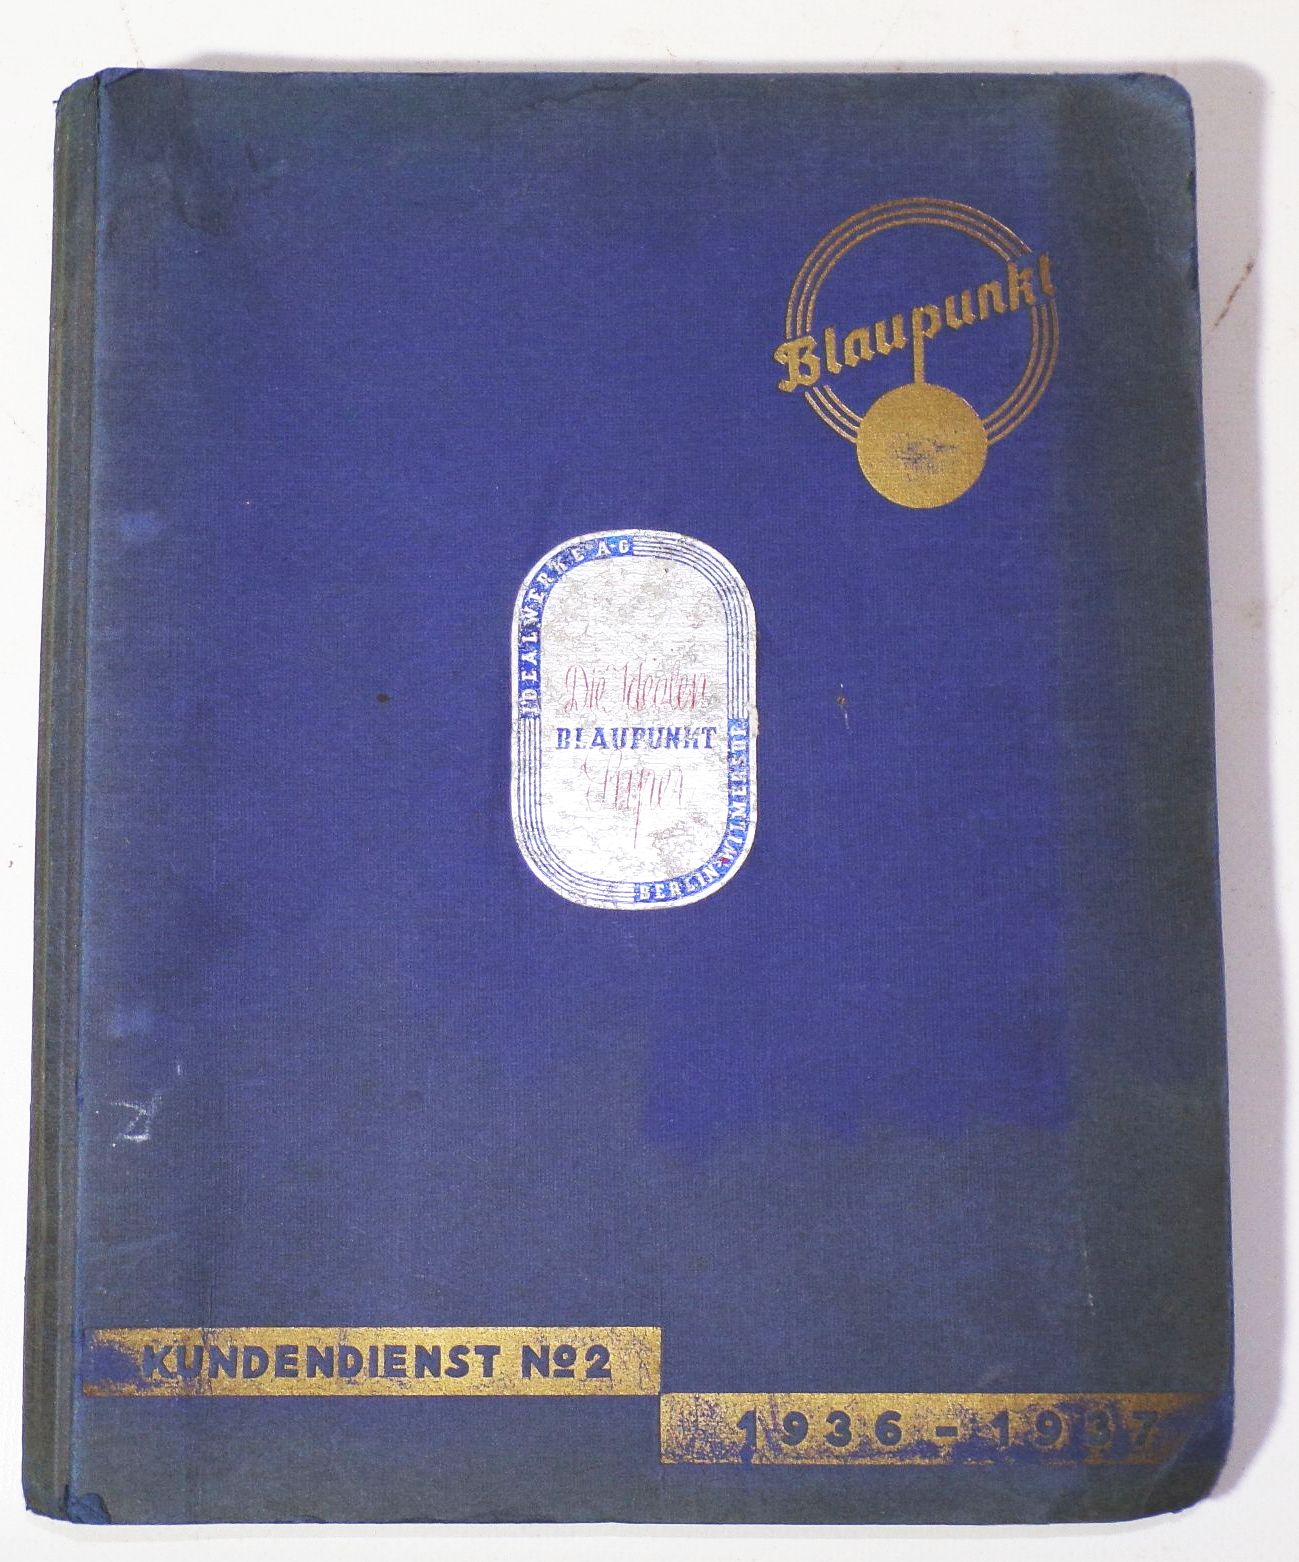 Blaupunkt Kundendienst Nr 2 Radio 1936 bis 1937 